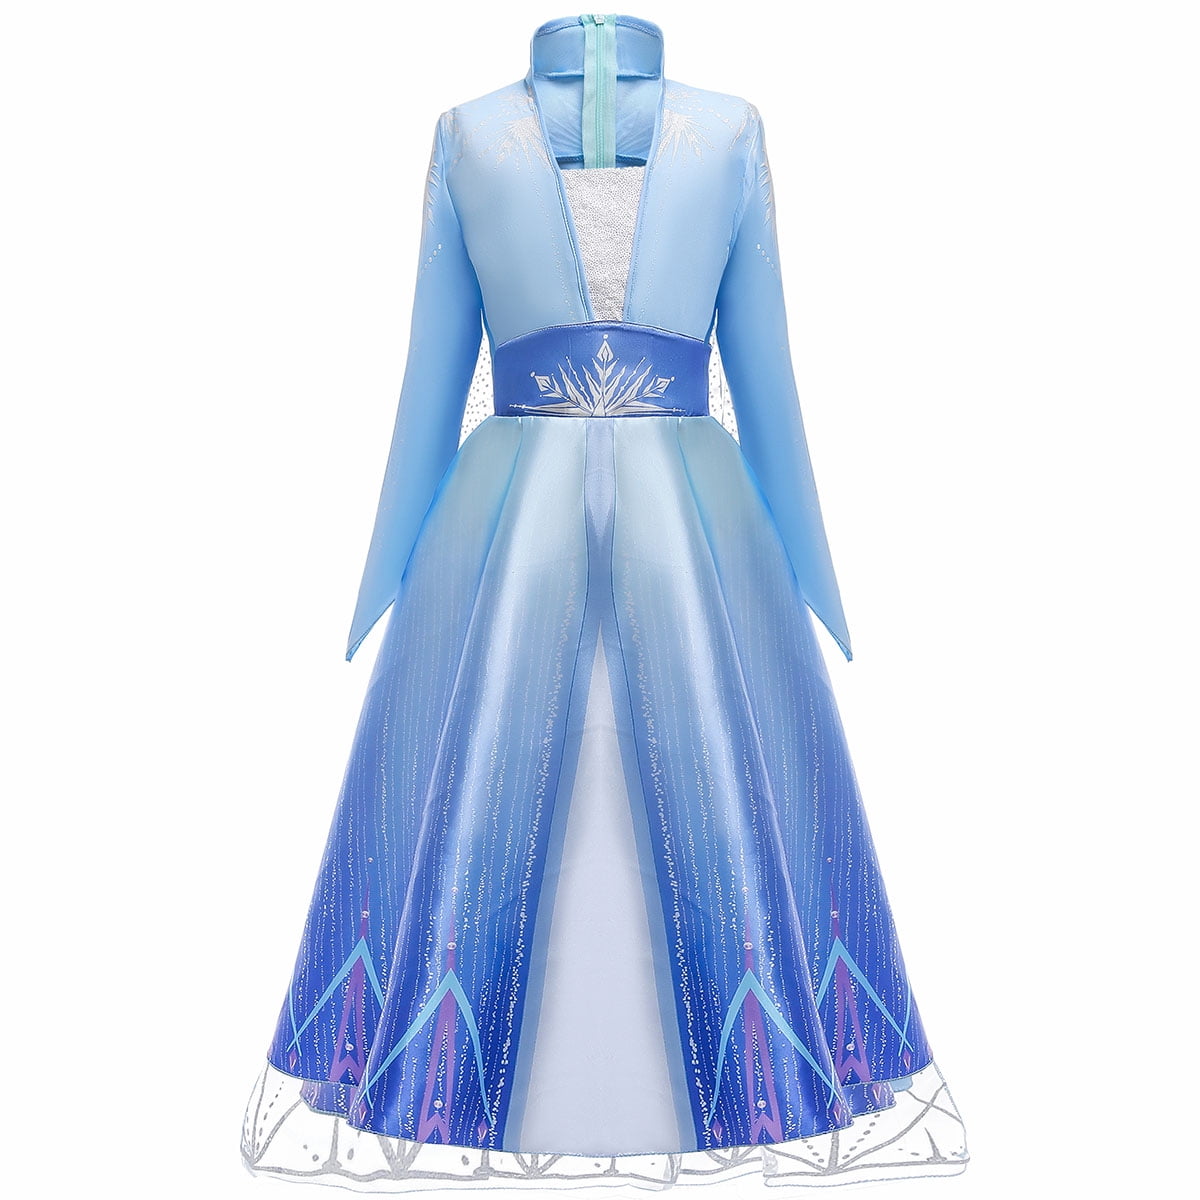 Kids Girls Disney Elsa Frozen Dress Costume Princess Anna Party Dress hot gift 